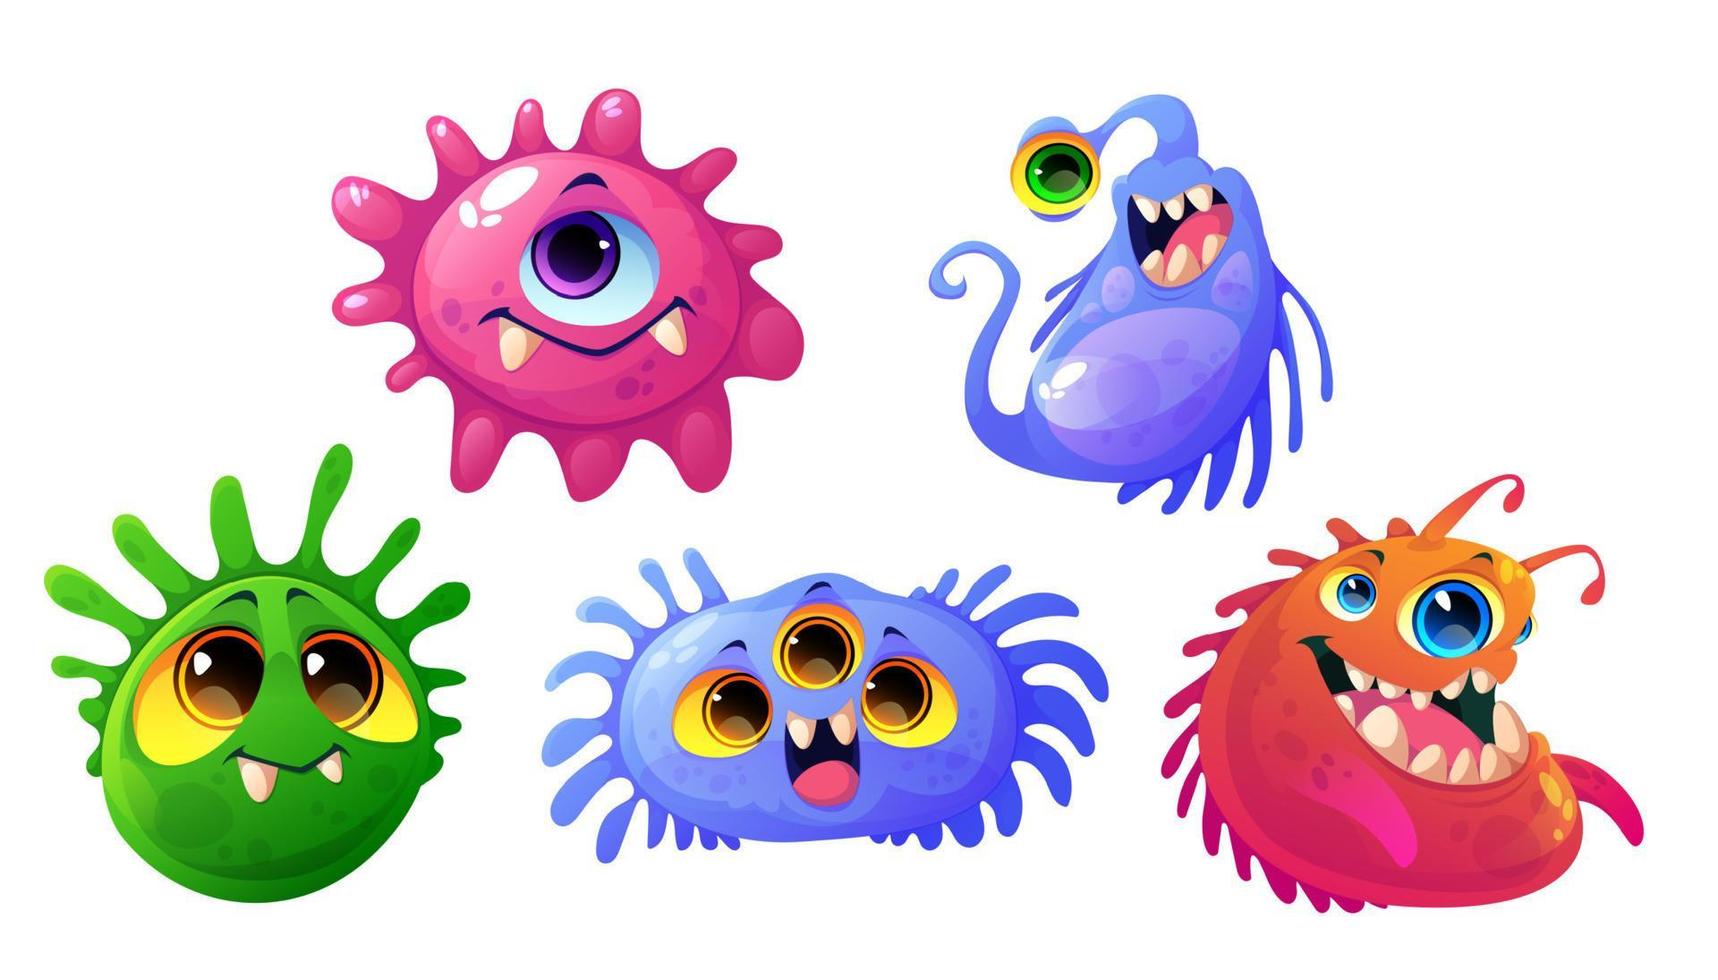 keime, viren und bakterien zeichentrickfiguren gesetzt vektor